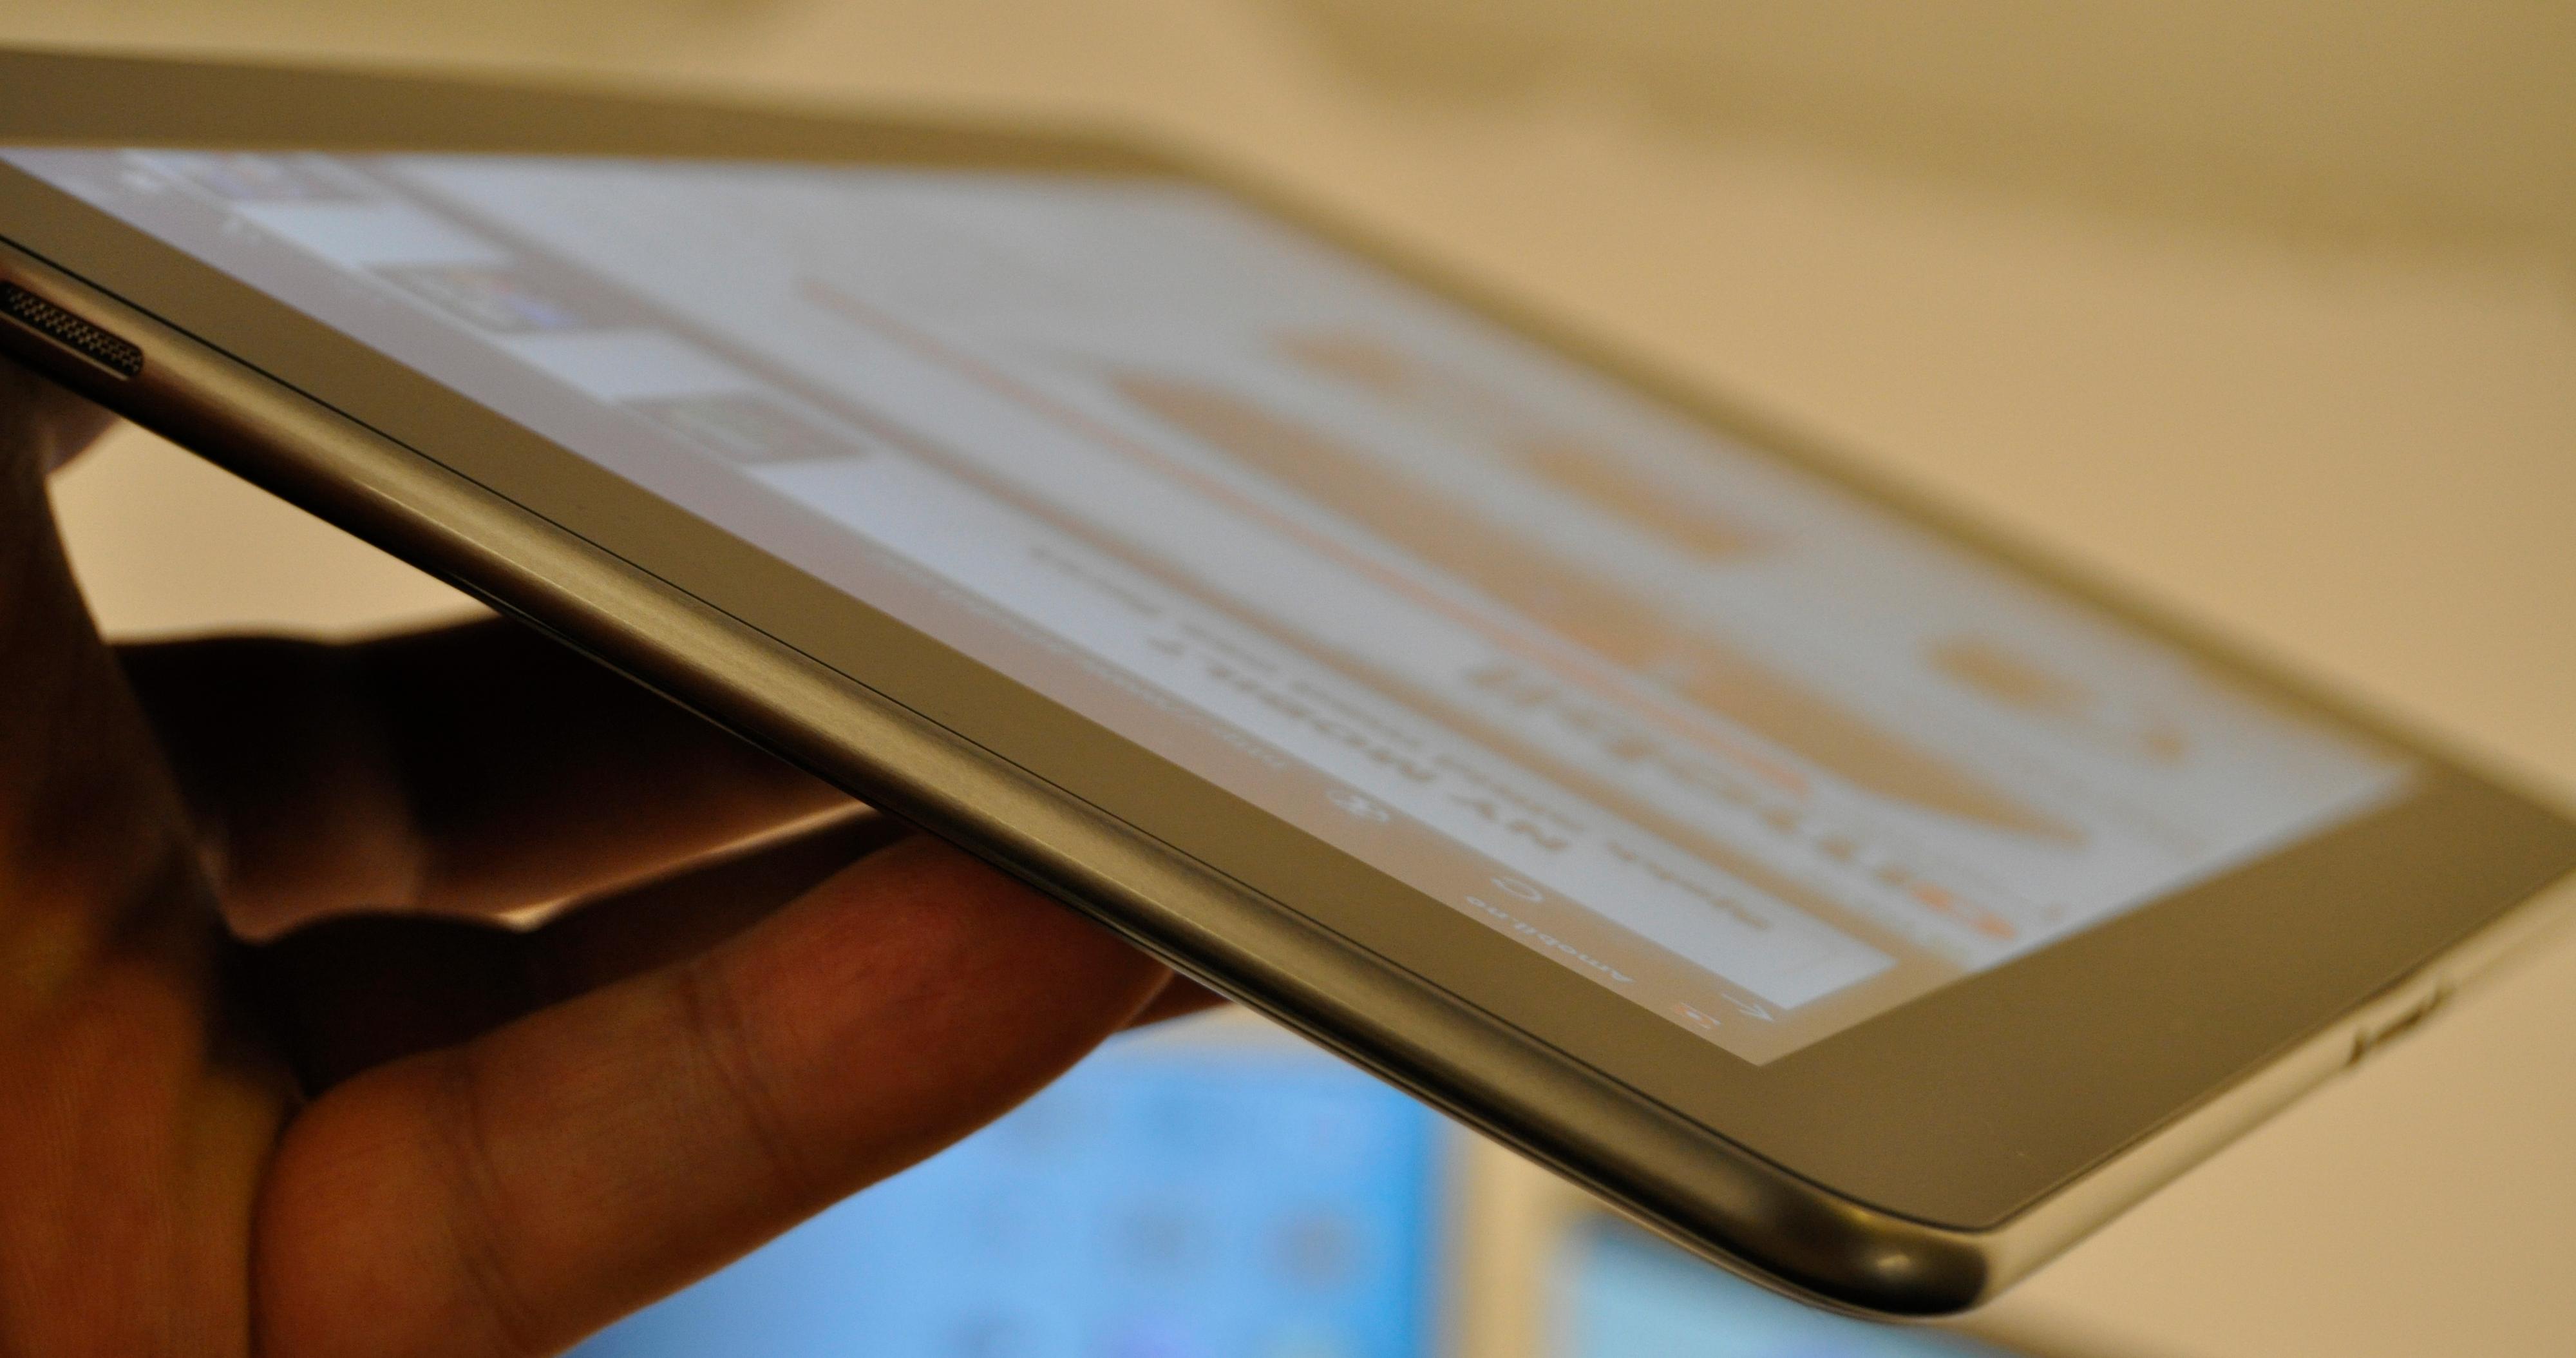 Galaxy Tab 10.1 er det tynneste nettbrettet på markedet når det kommer i juni.